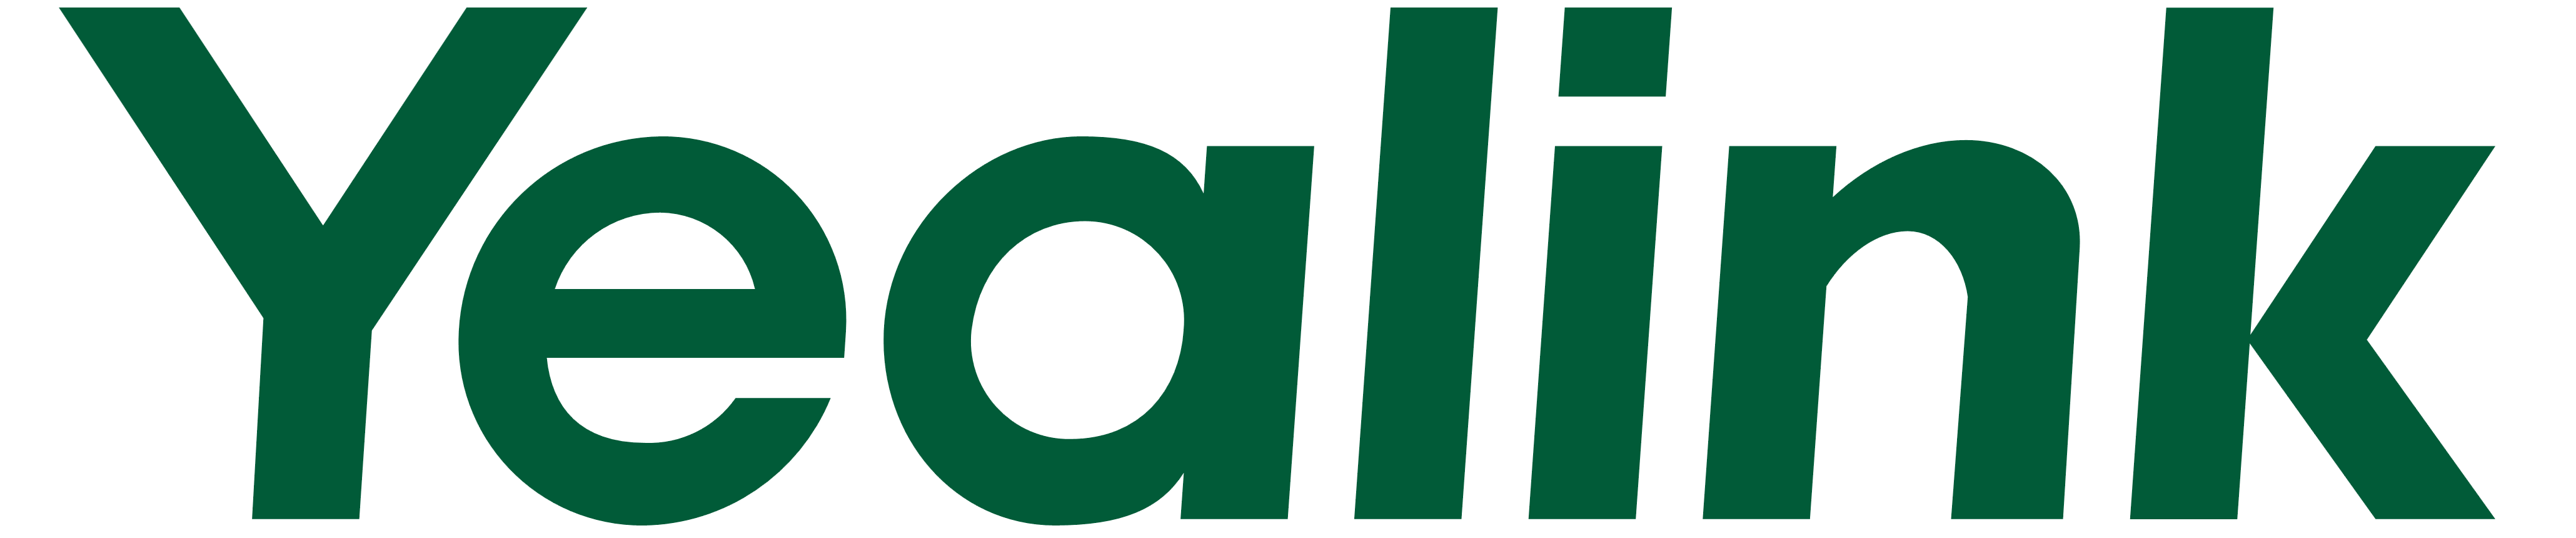 yealink_logo_logo